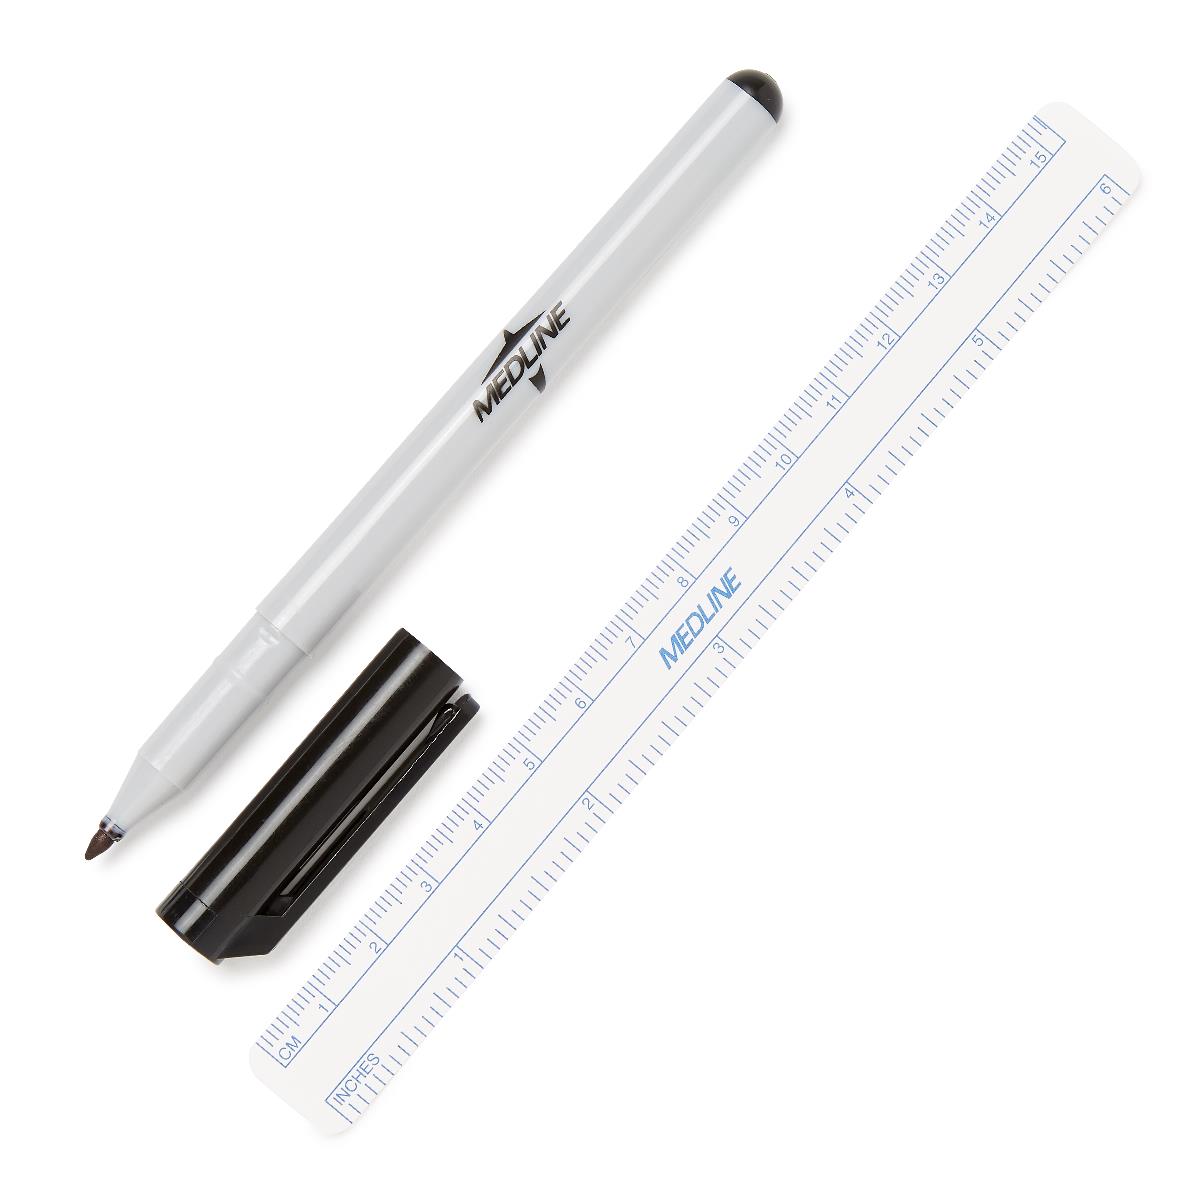 Black PLASTIC Sterile Pen/Marker - PDC (STER-PEN)